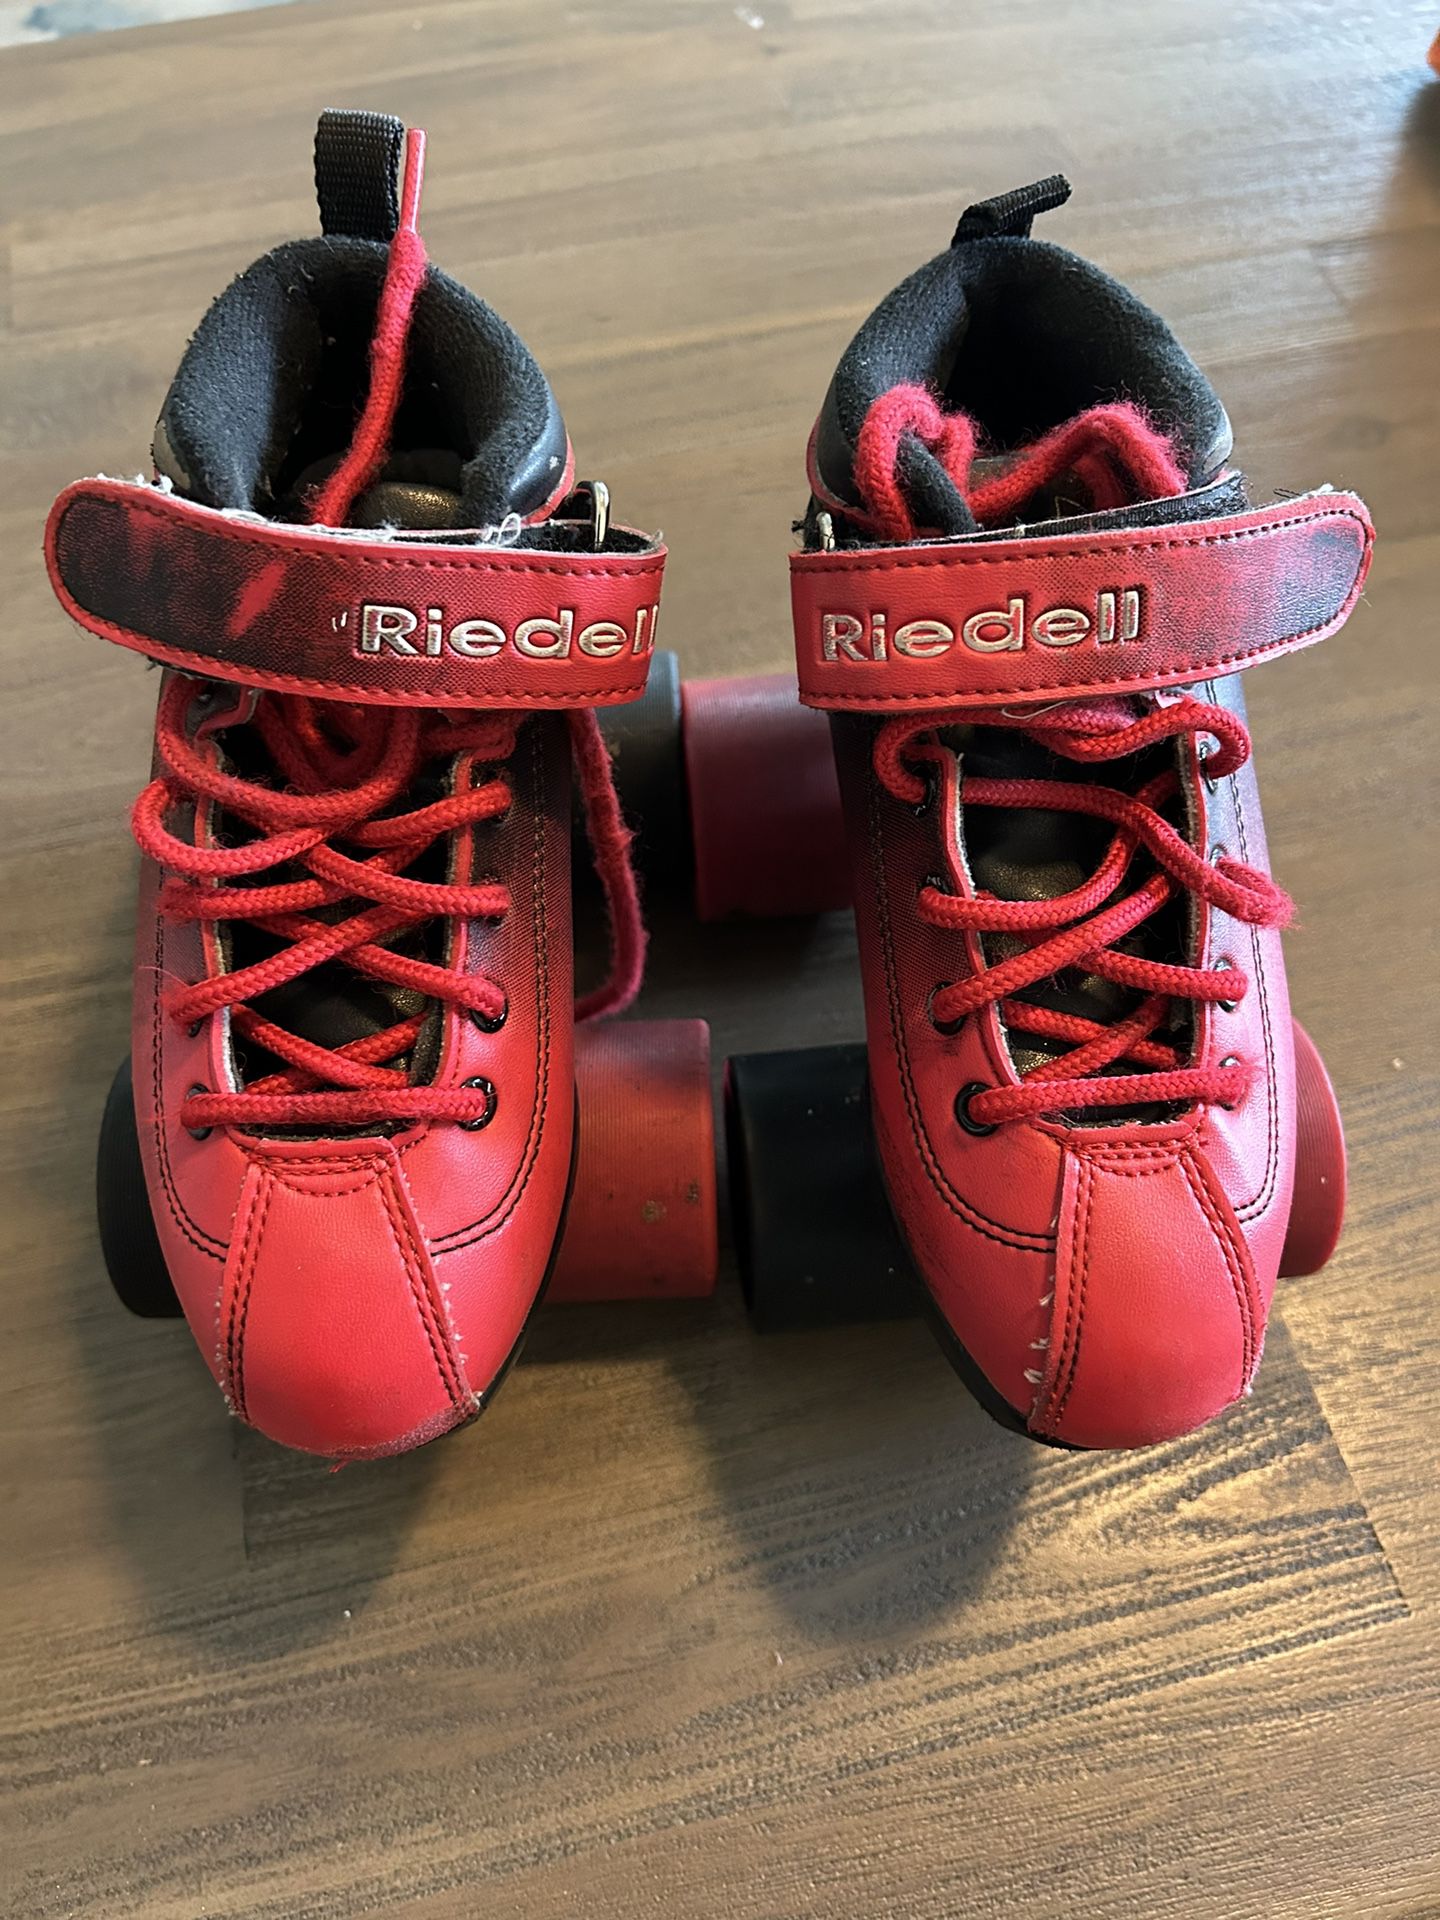 Riedell Black/Red Dart kids Size 1 Quad Roller Skates